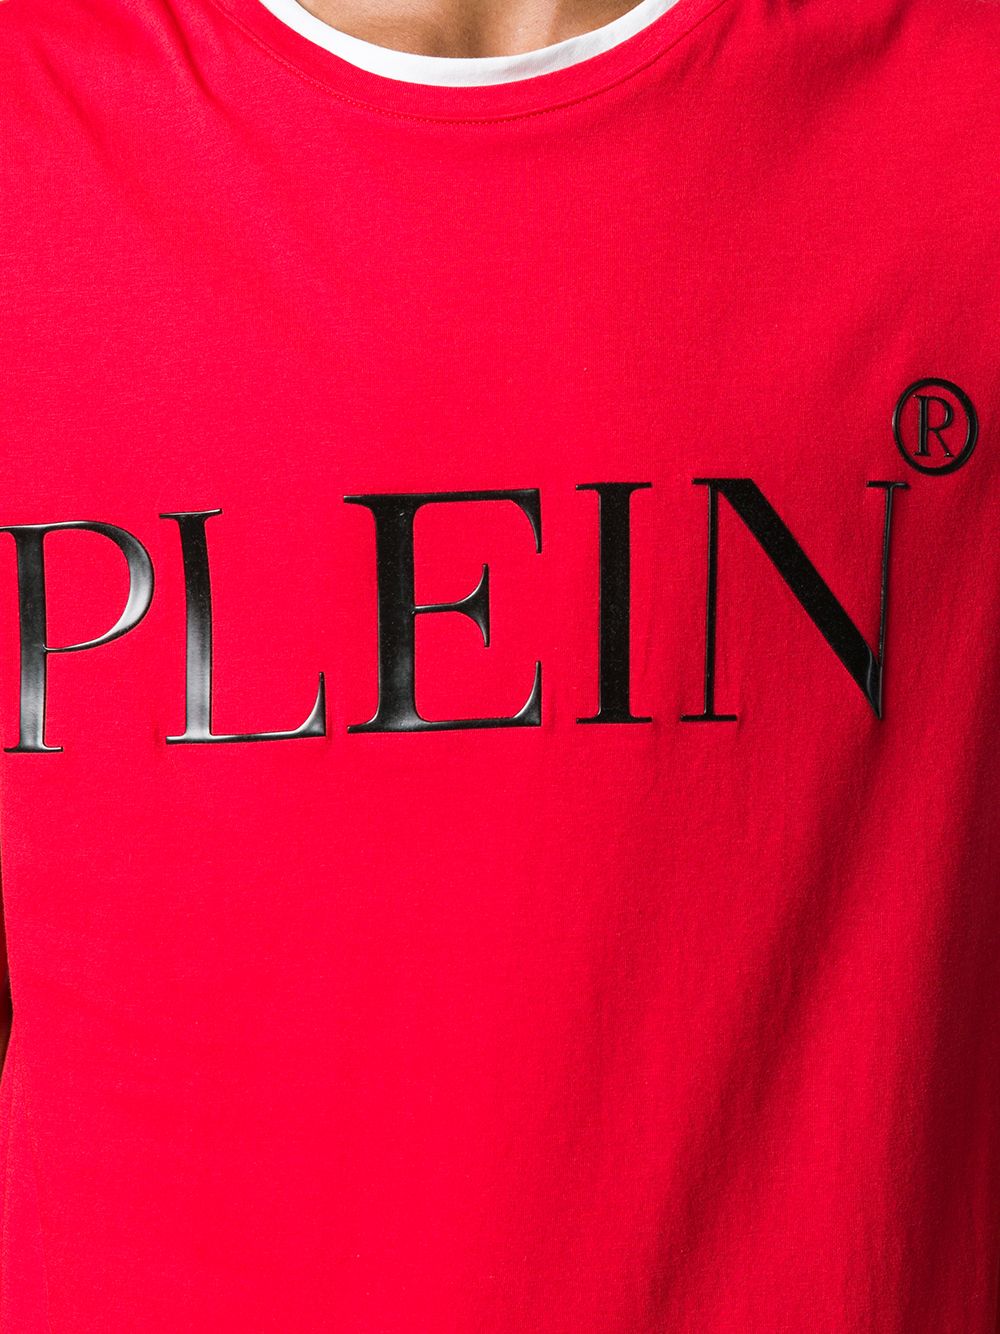 фото Philipp Plein многослойная футболка с логотипом